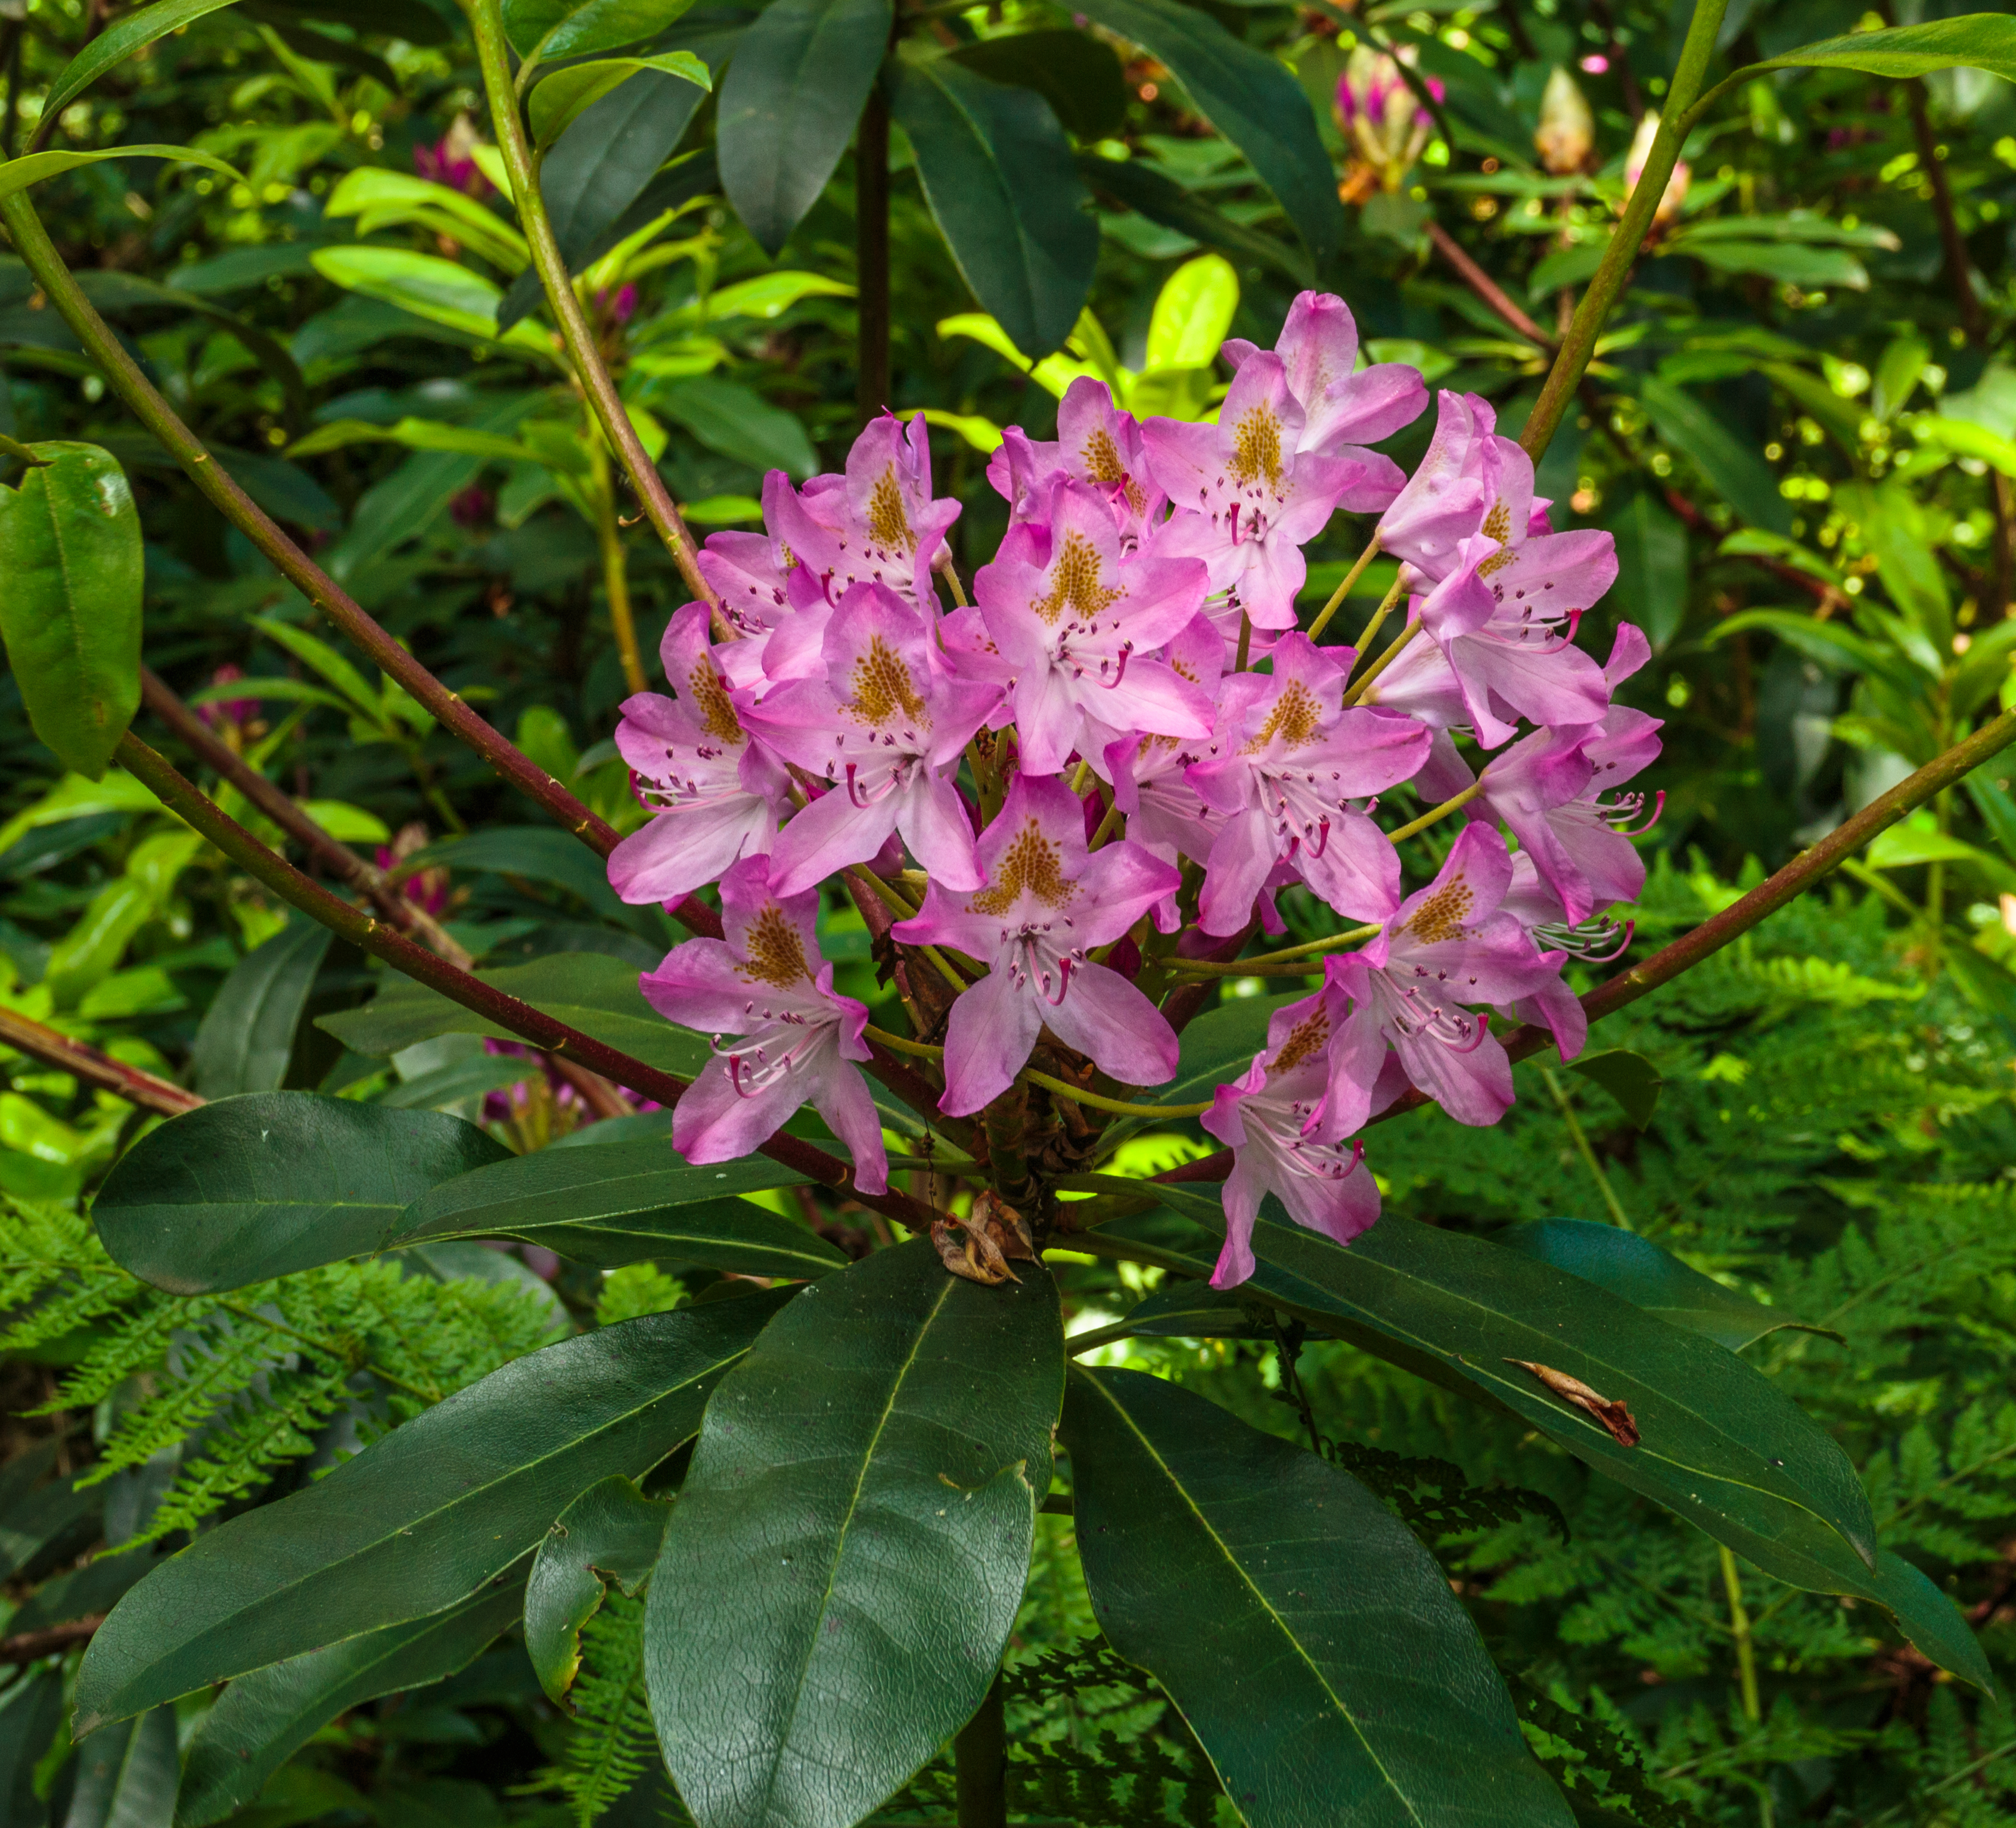 Bloem van Rododendron. Locatie, Tuinen Mien Ruys